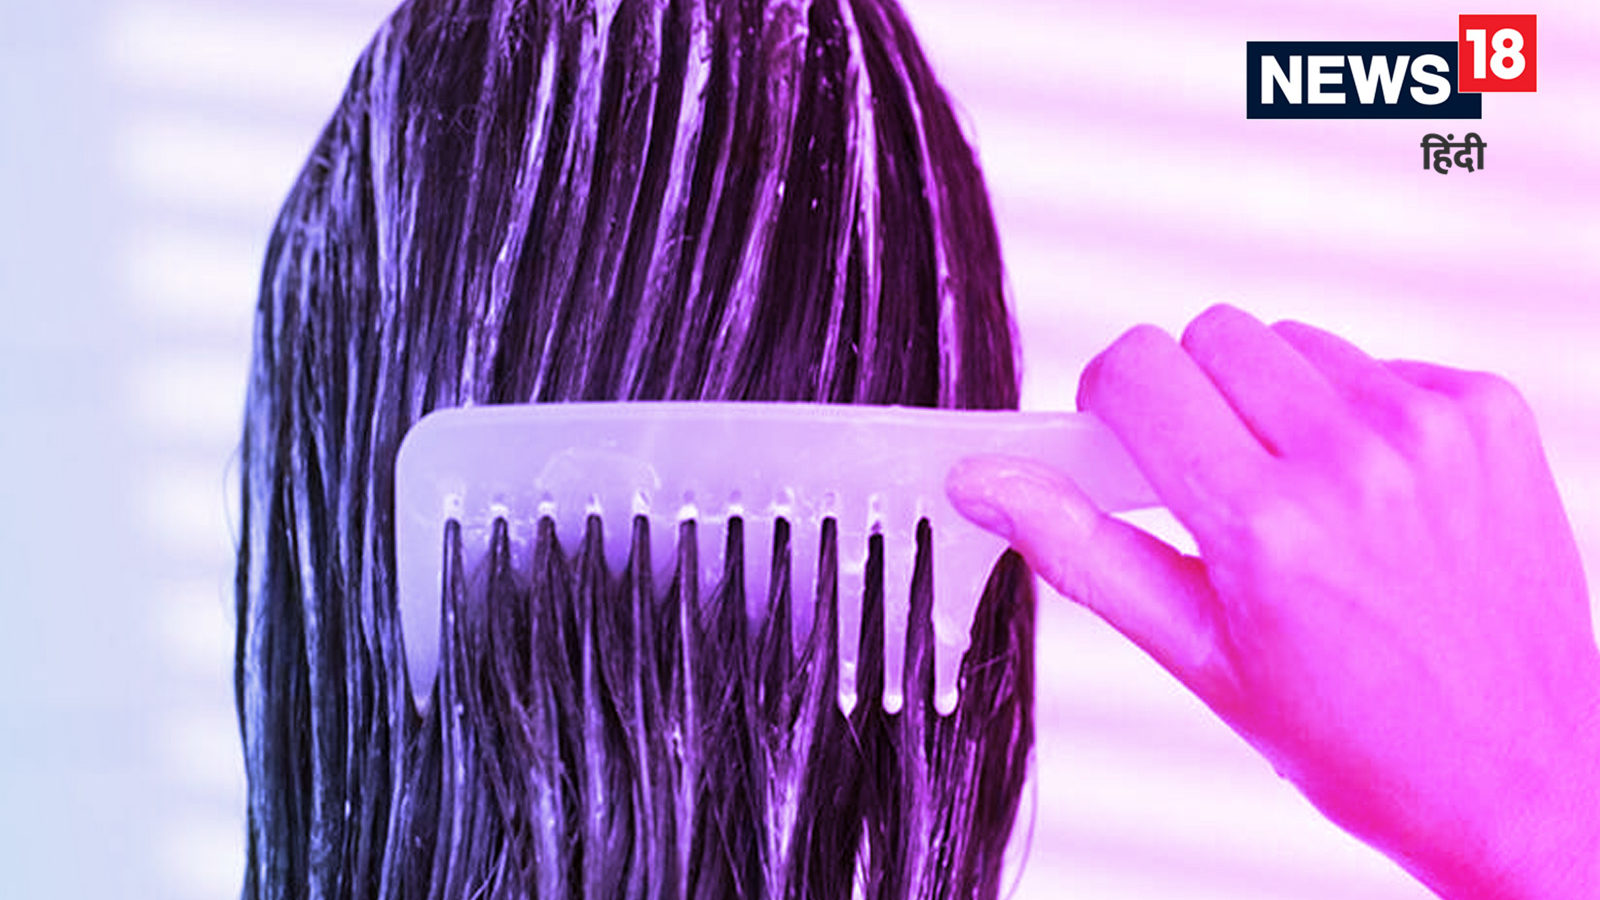 Hair Care Tips: सही तरीके से कैसे इस्तेमाल करें कंडीशनर? जानें इसके फायदे -  hair care tips how to apply conditioner on hair and its benefits in hindi  mt – News18 हिंदी